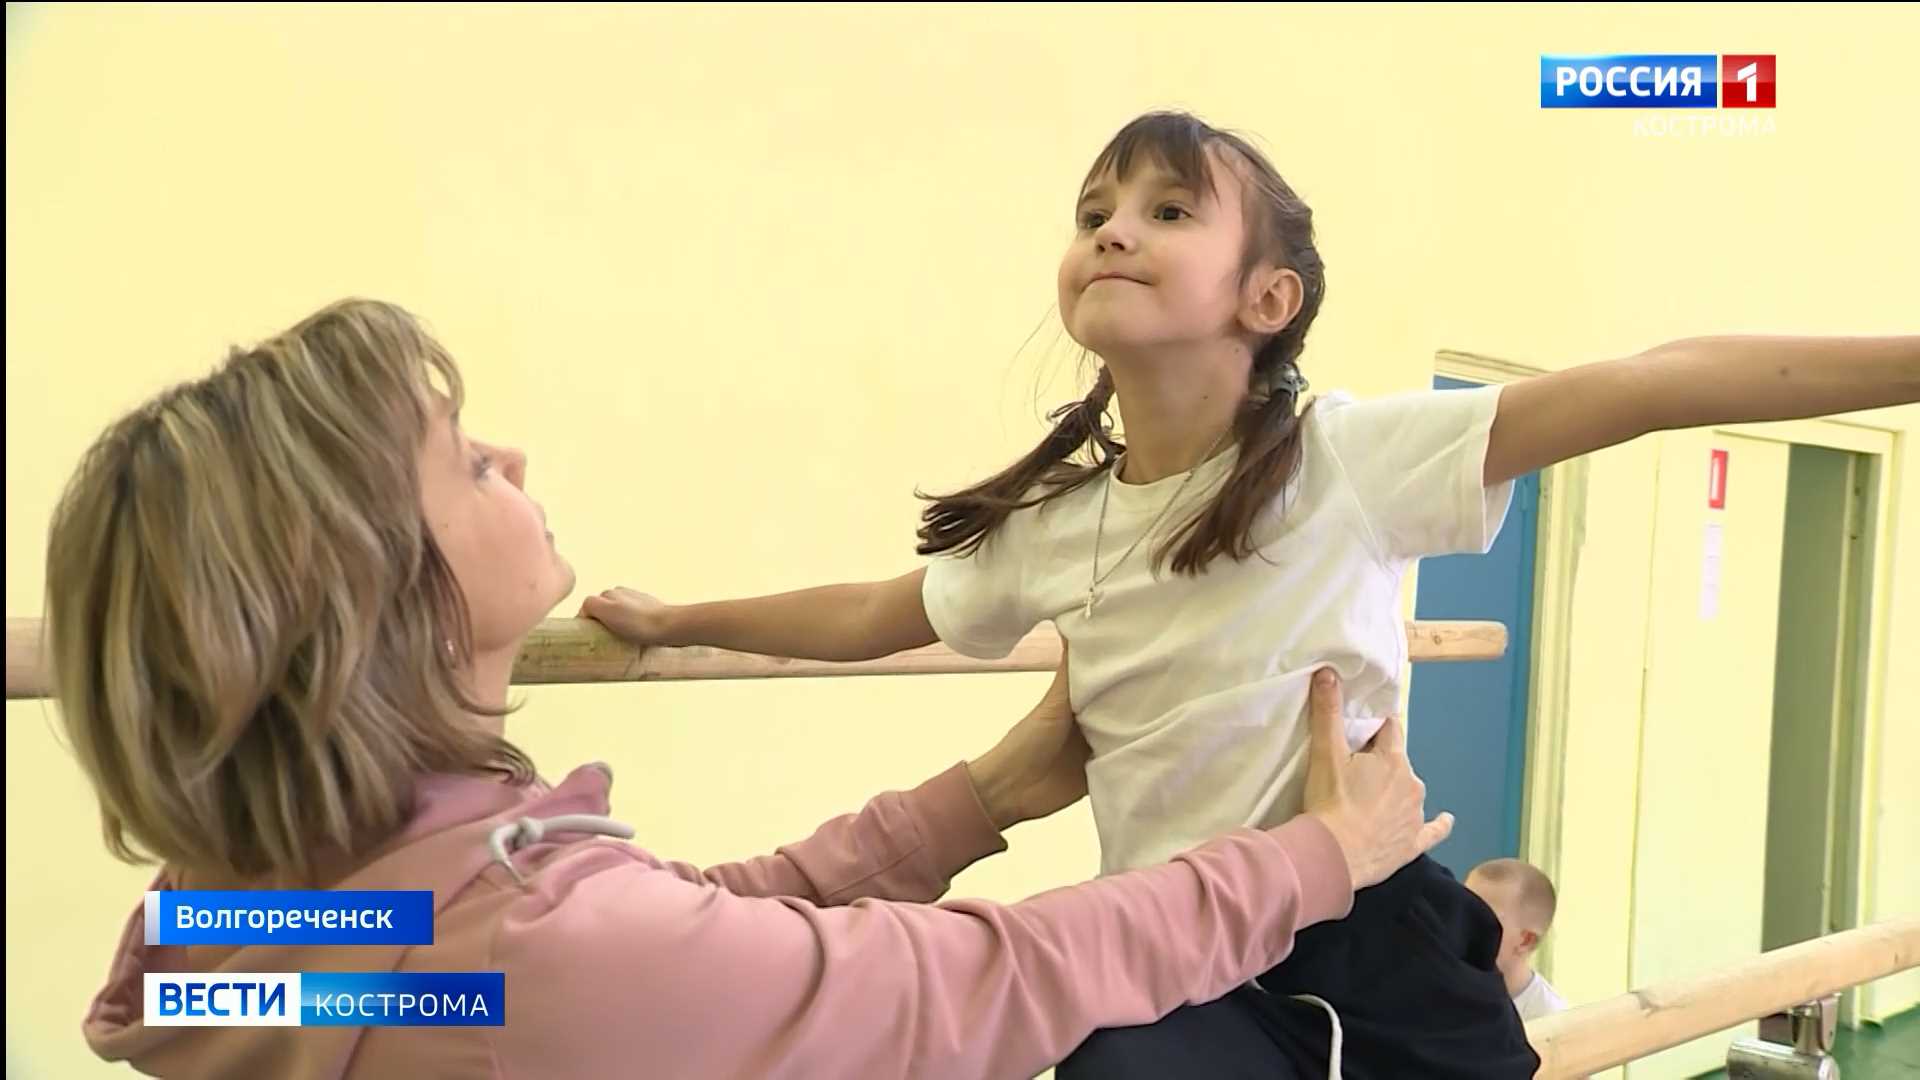 В Волгореченске Костромской области детский спортзал стал доступен для взрослых